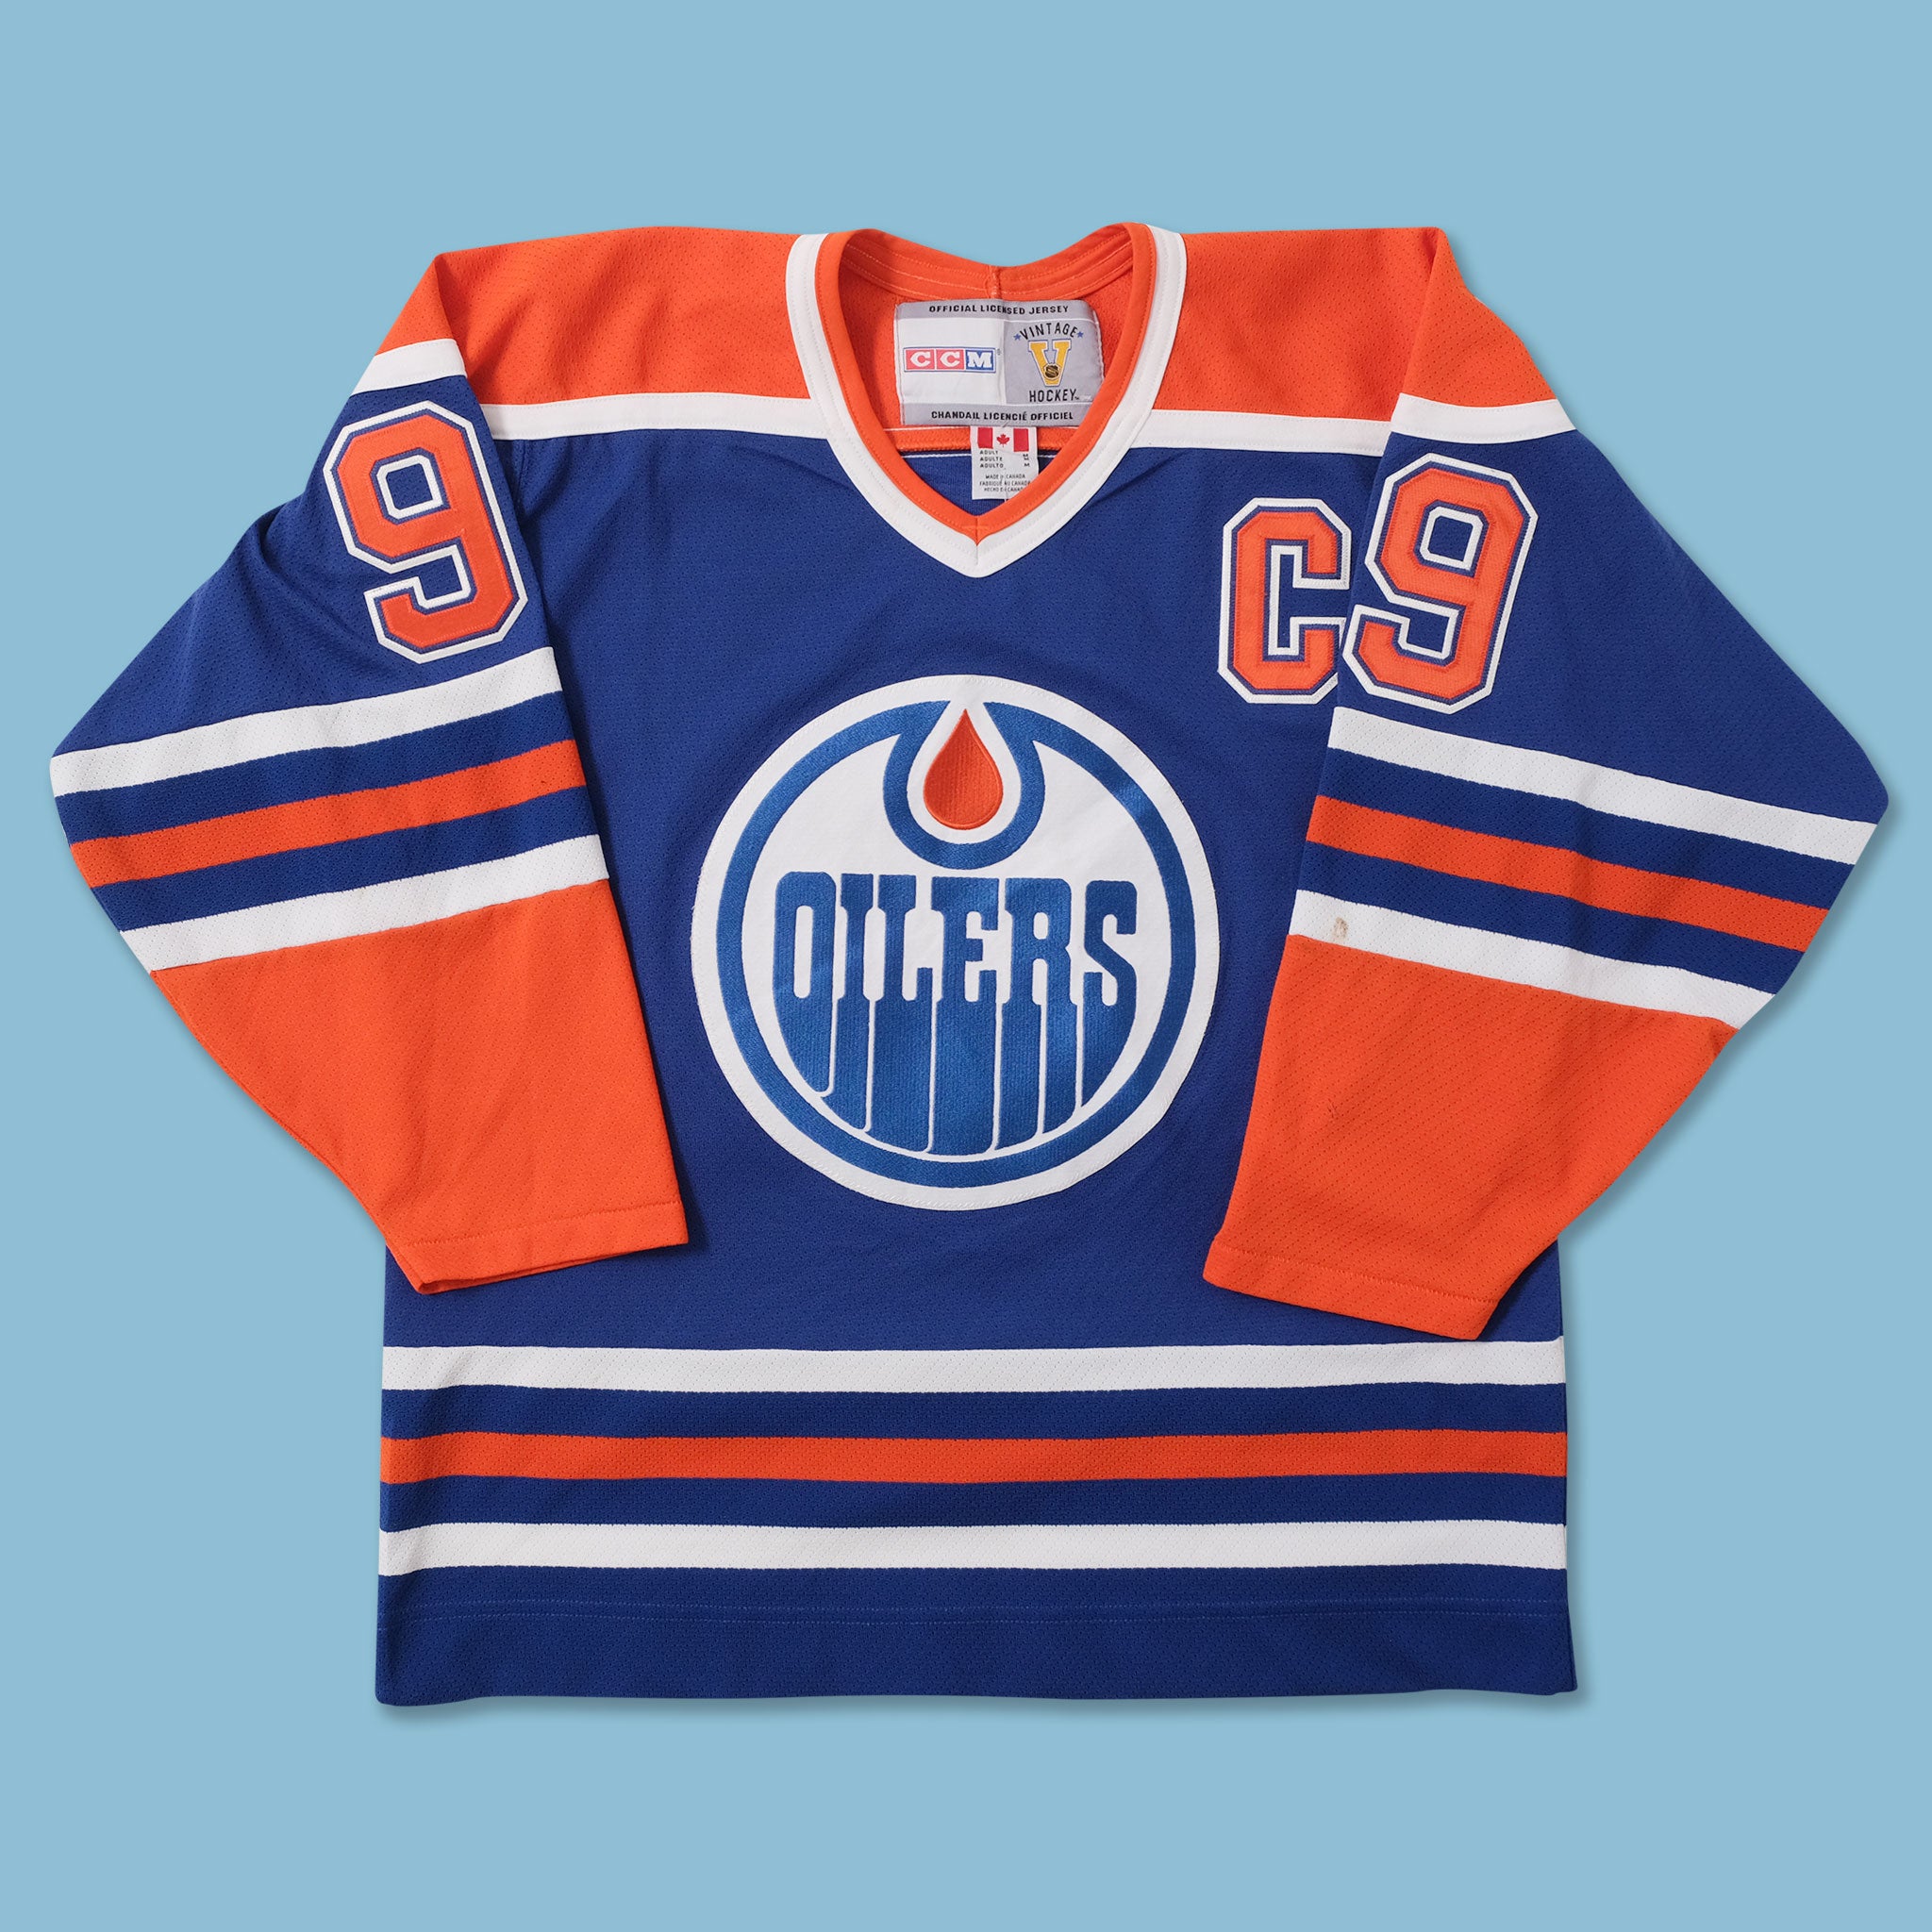 Edmonton Oilers Vintage CCM Jersey - M